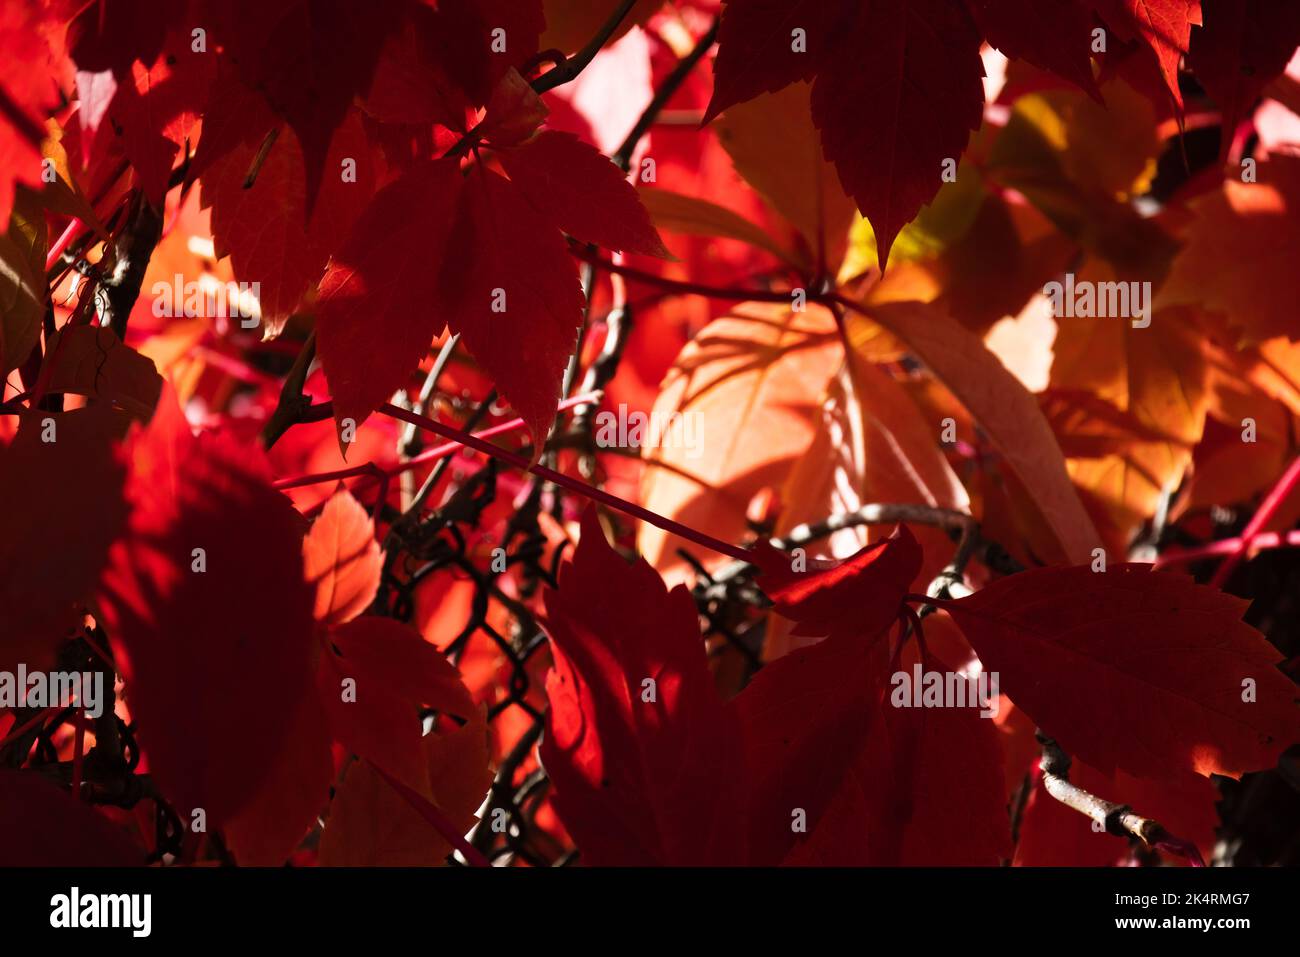 Foglie rosse di Parthenocissus quinquefolia in una giornata di sole, pianta di arrampicata decorativa della famiglia d'uva. Foto di sfondo autunnale dai colori vivaci Foto Stock